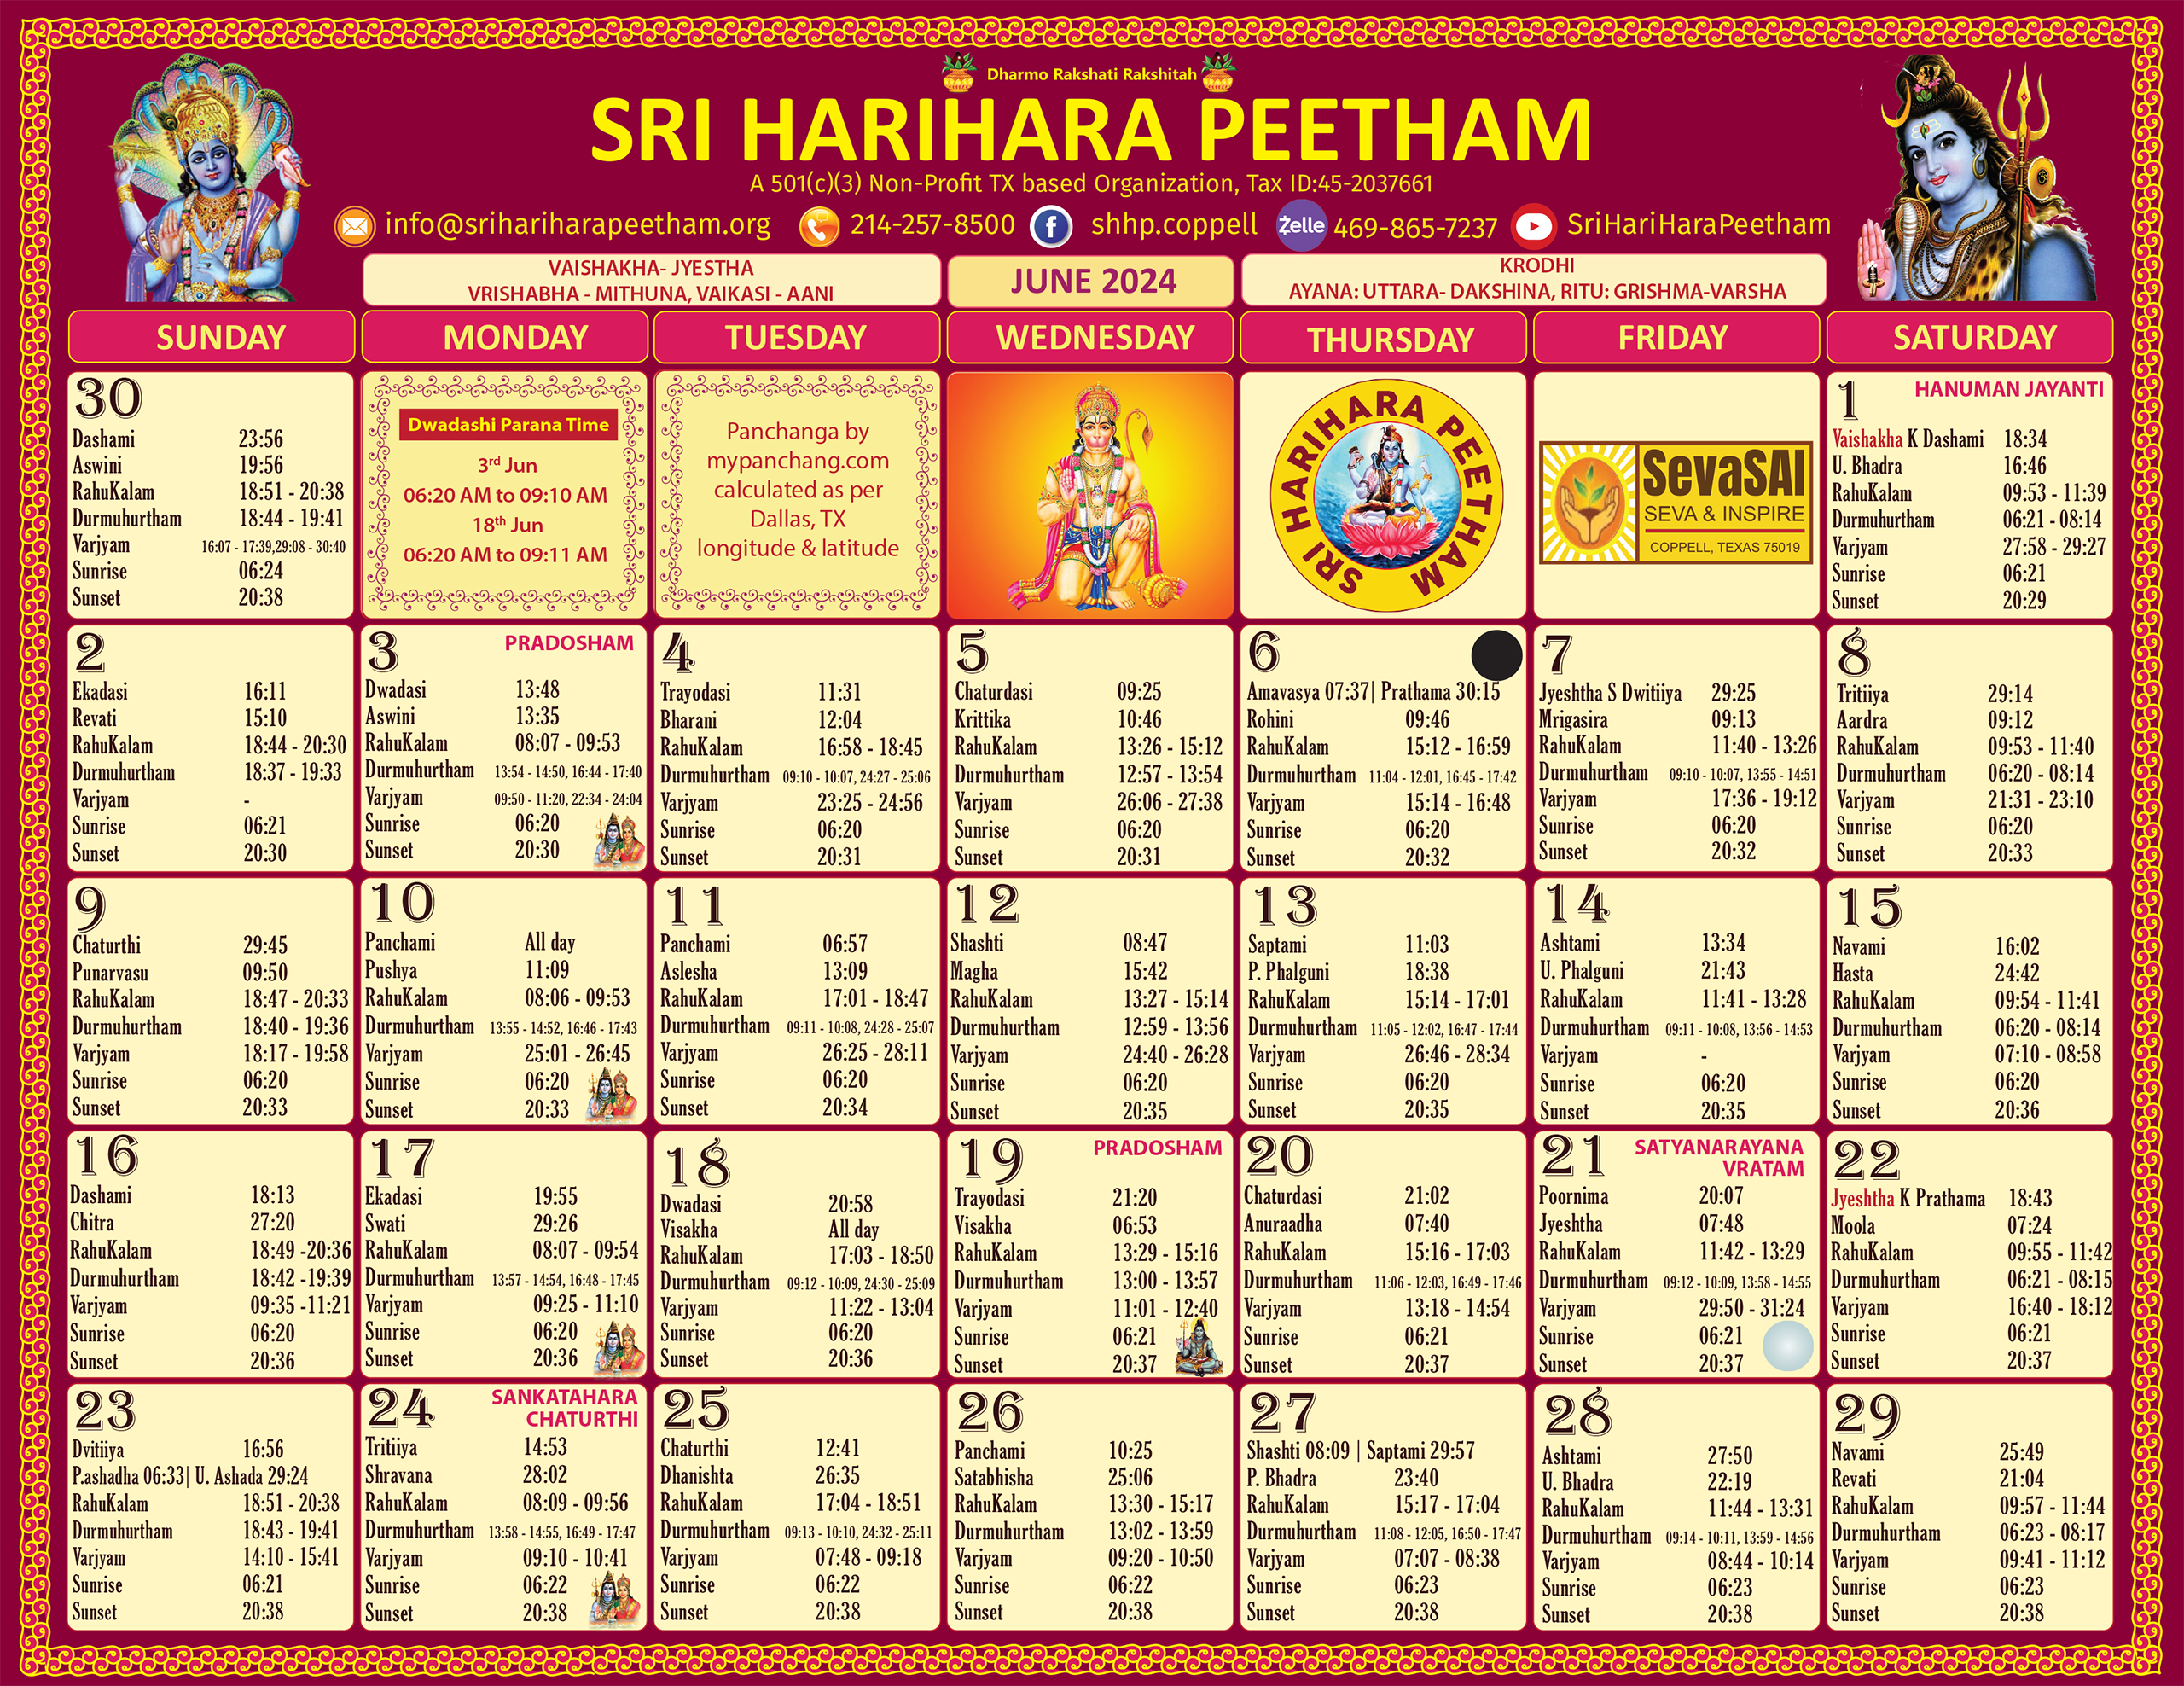 Sri HariHara Peetham's June 2024 calendar page